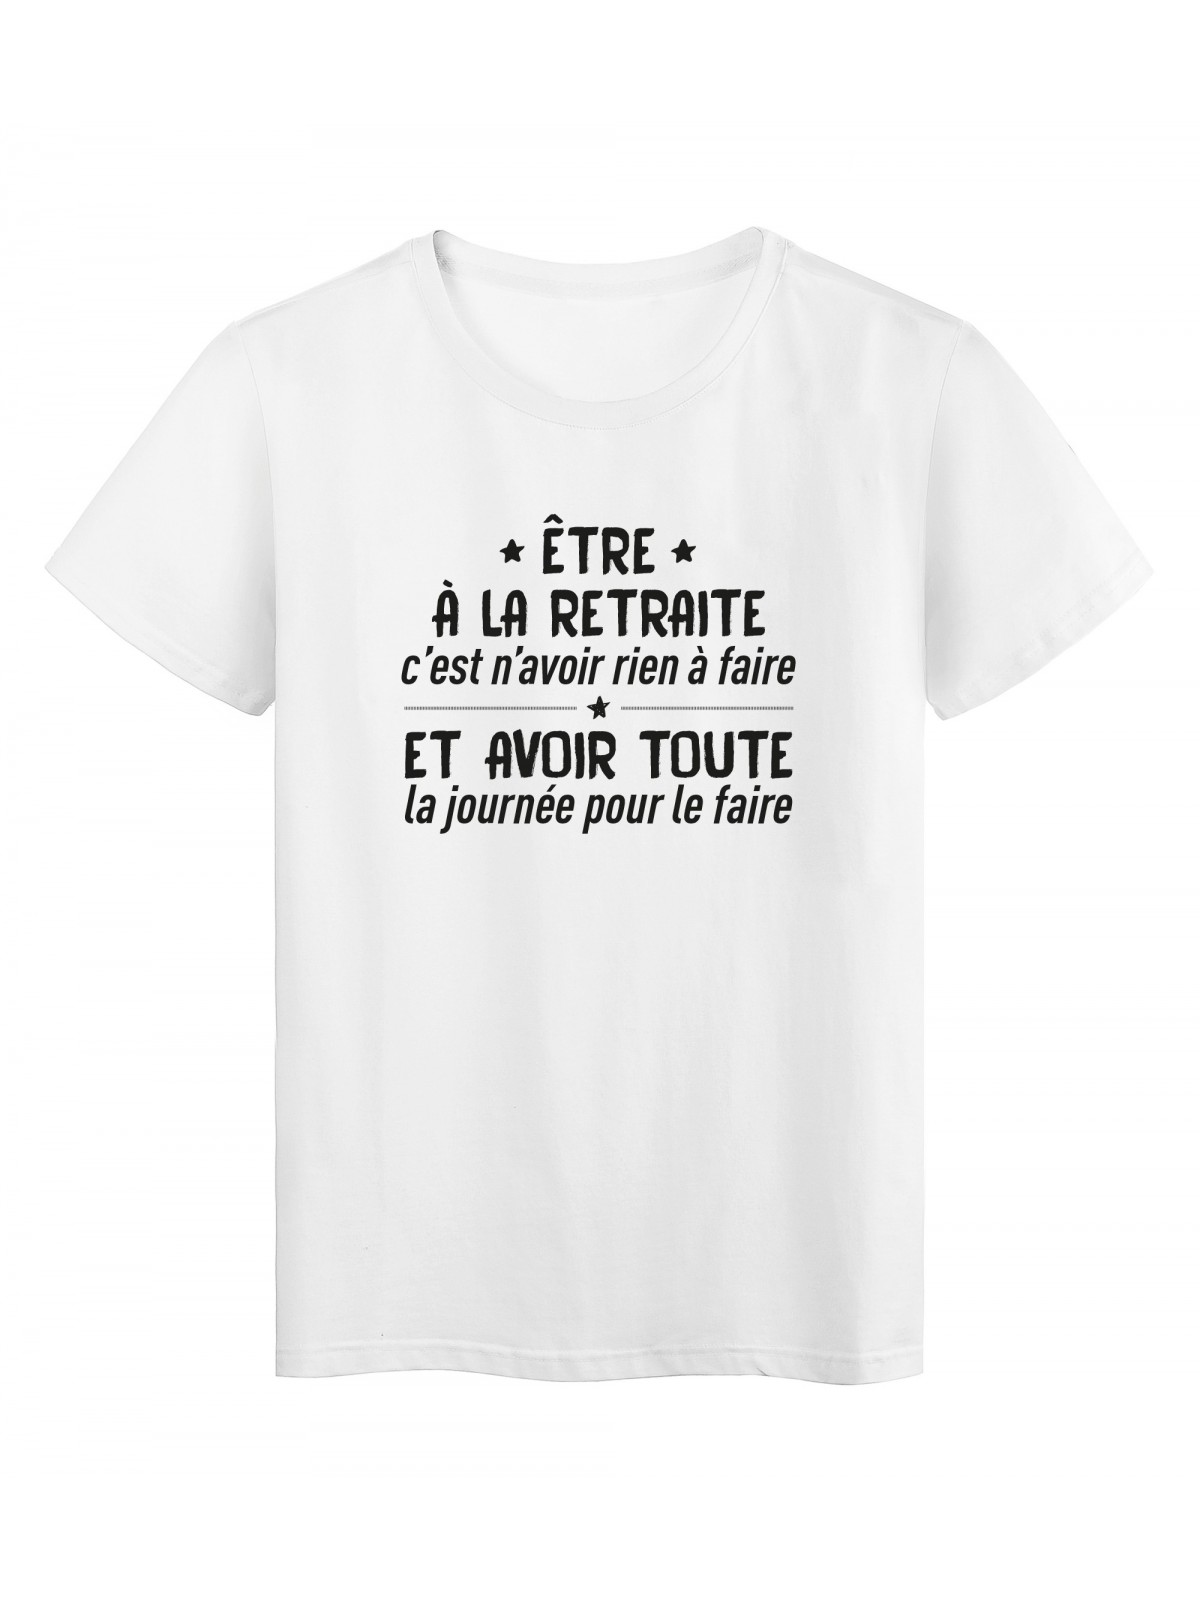 T-Shirt imprimÃ© citation humour etre a la retraite c'est rien n'avoir rien a faire et avoir toute la journÃ©e pour le faire